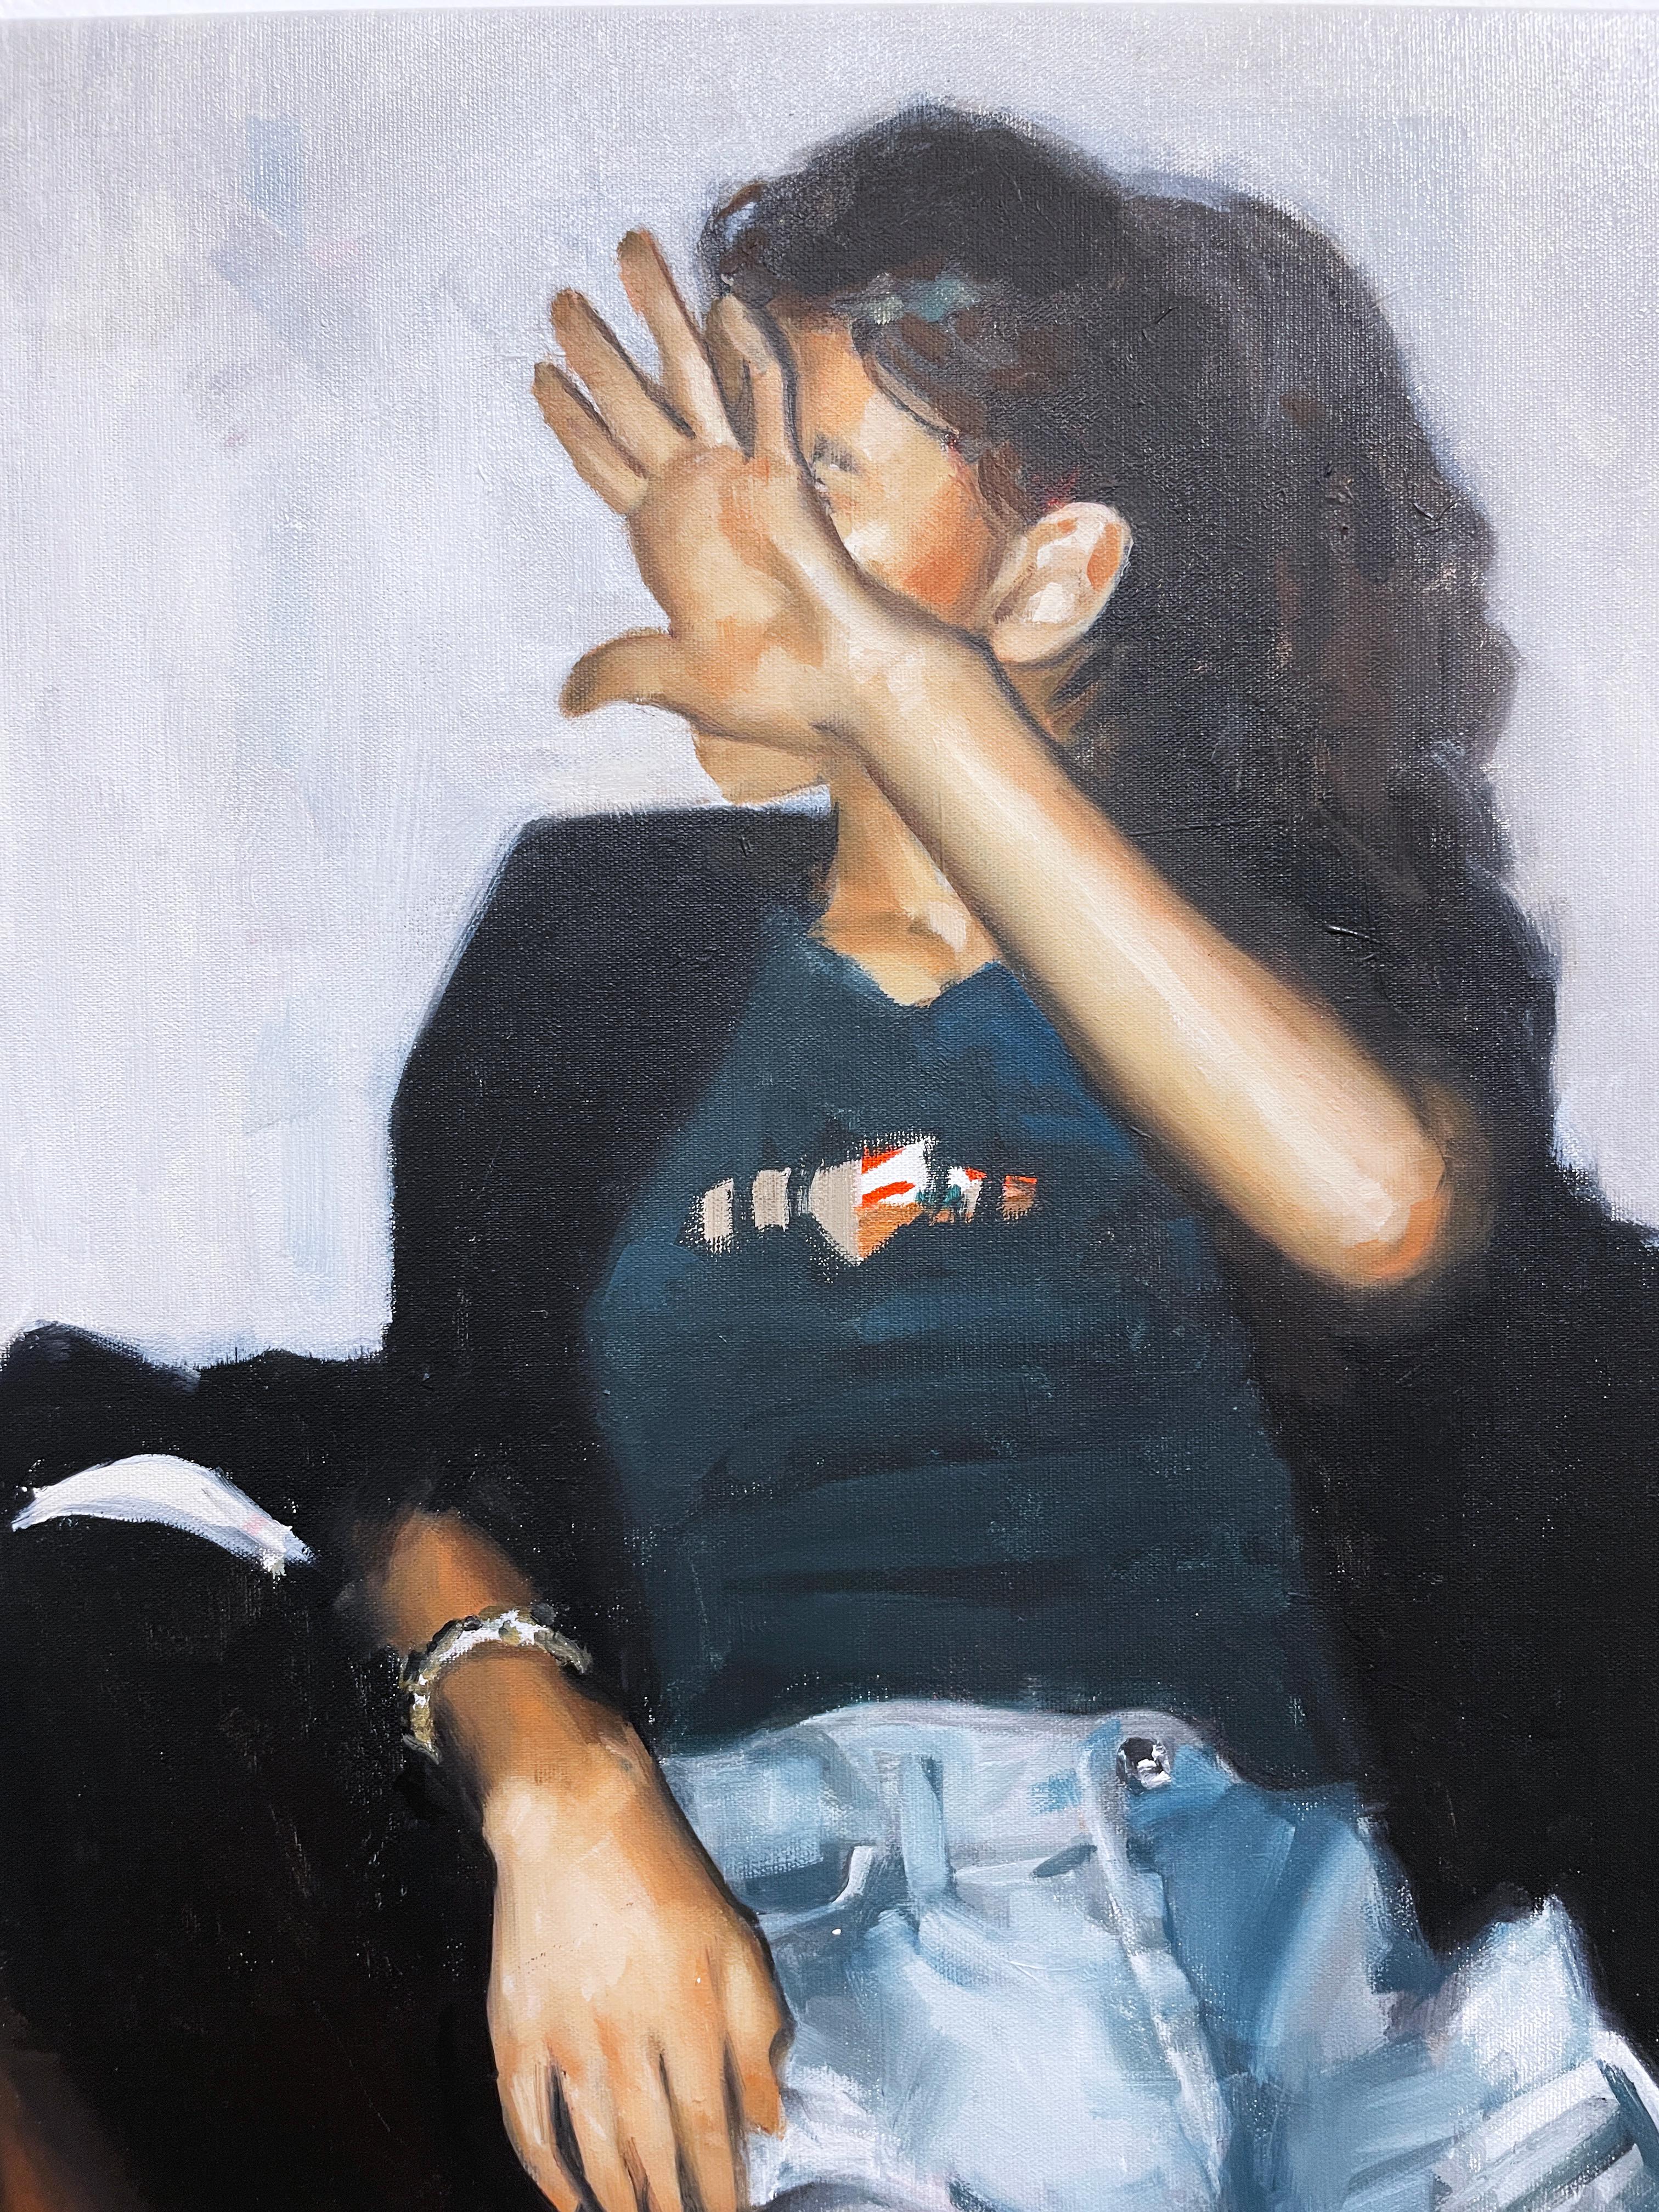 No Flash (2022) huile sur toile, figurative, cliché de femme, visage caché à la main  - Noir Interior Painting par RU8ICON1